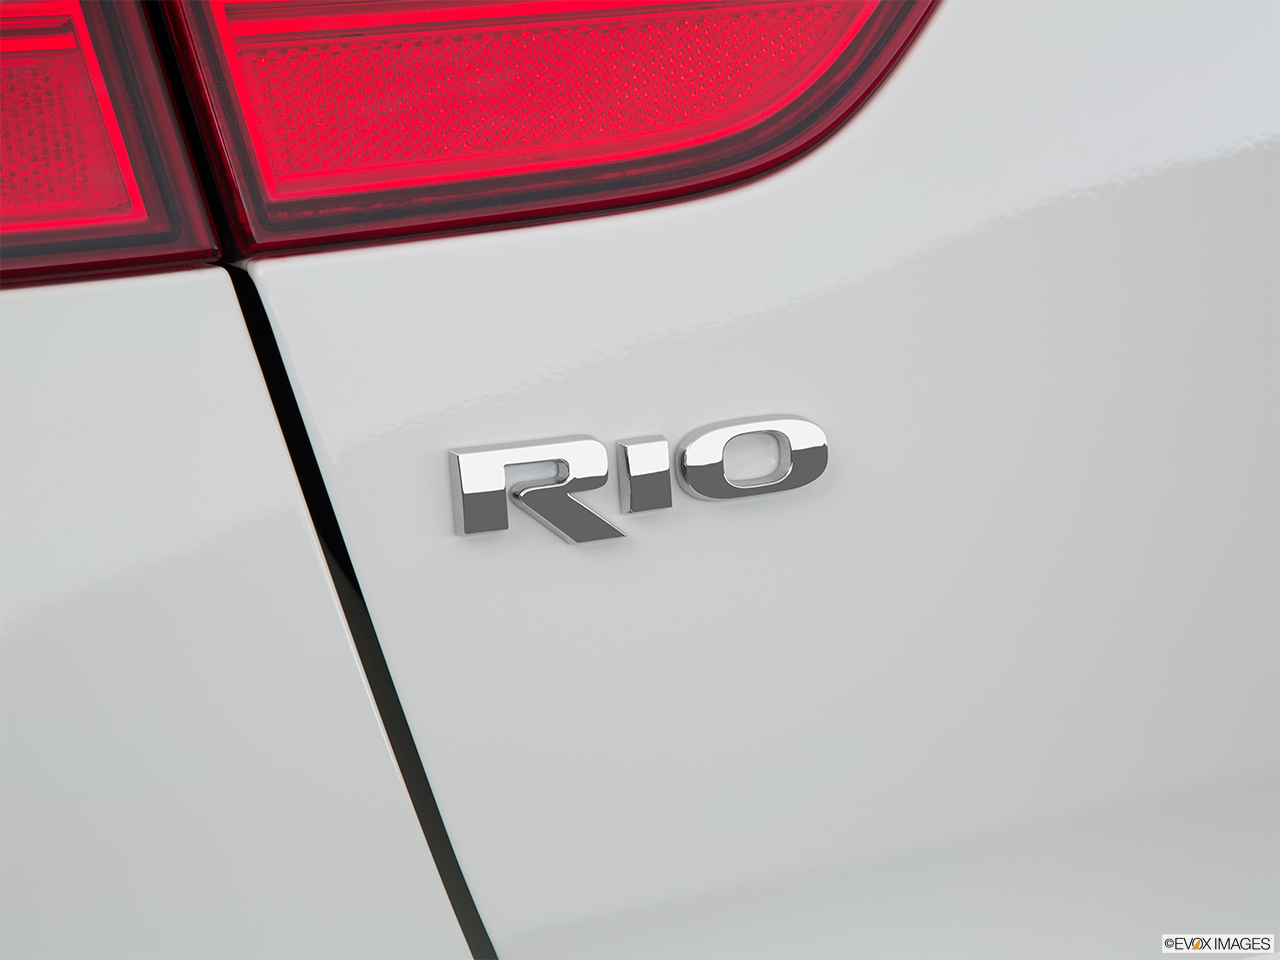 2017 Kia Rio 5-door LX Rear model badge/emblem 